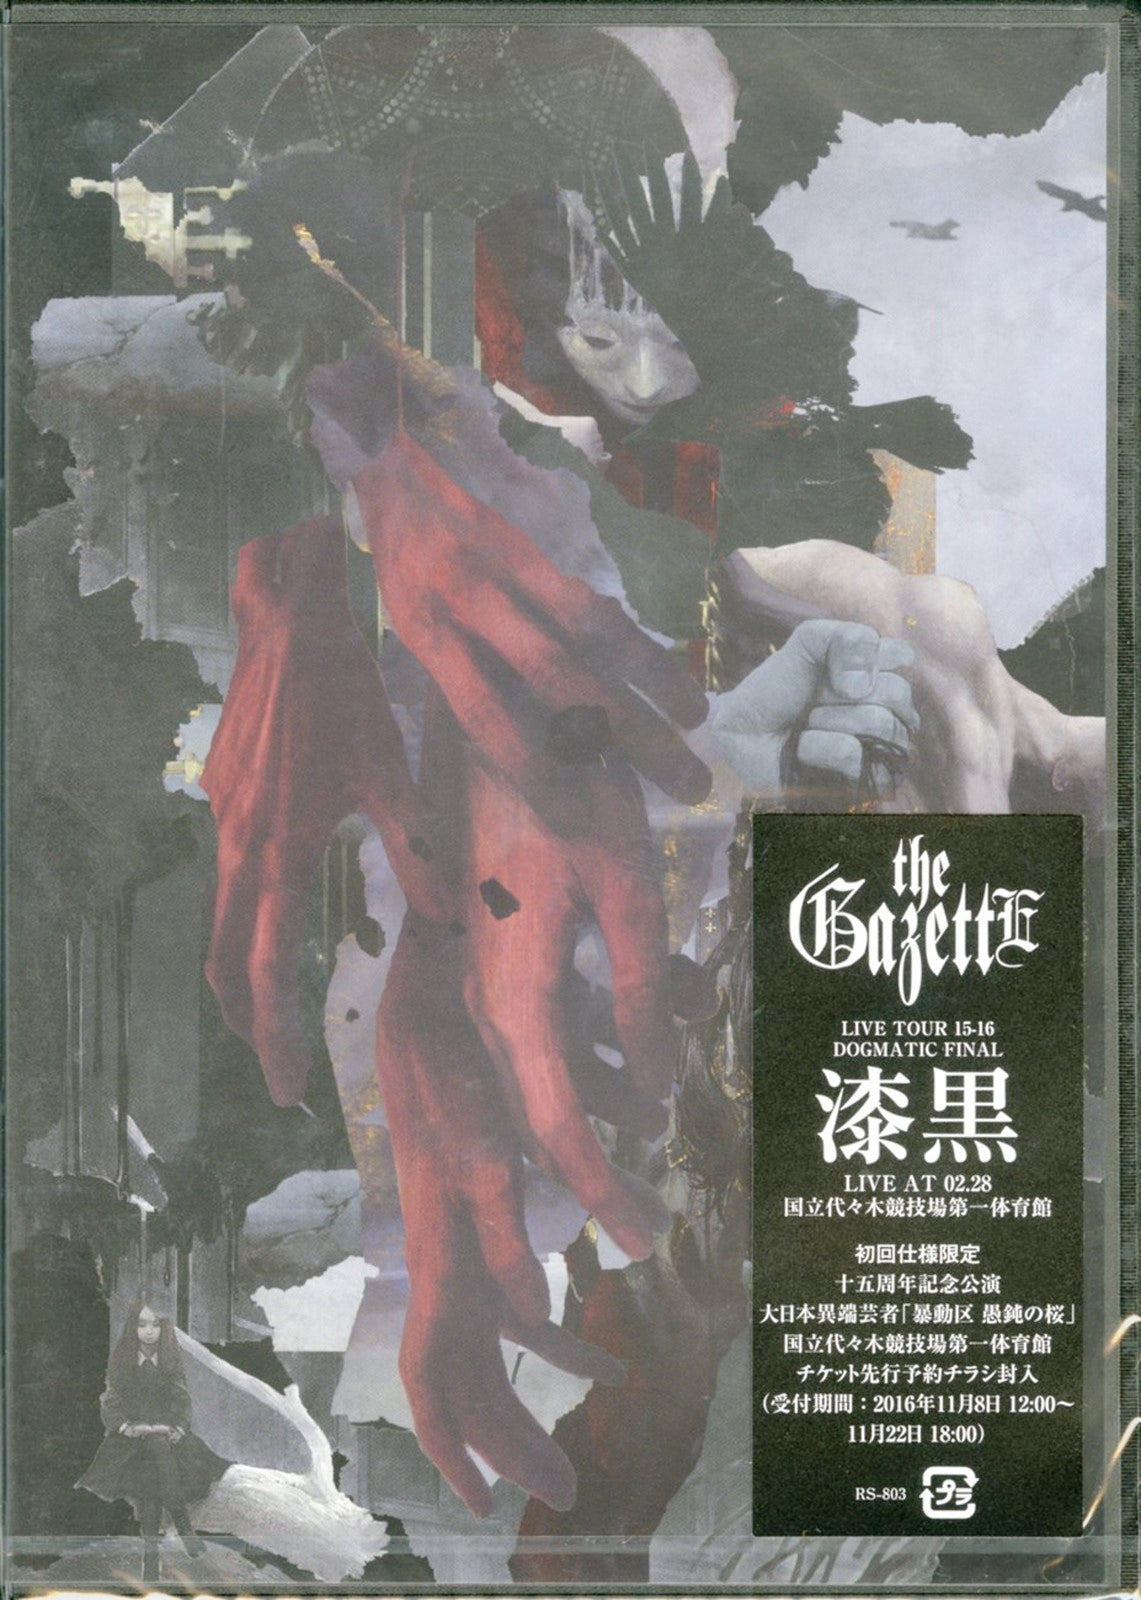 The Gazette - The Gazette Live Tour 15-16 Dogmatic Final - Shikkoku - Live At 02.28 Kokuritsu Yoyogi Kyogijyo Dai Ichi Taiiku Kan - 2 DVD